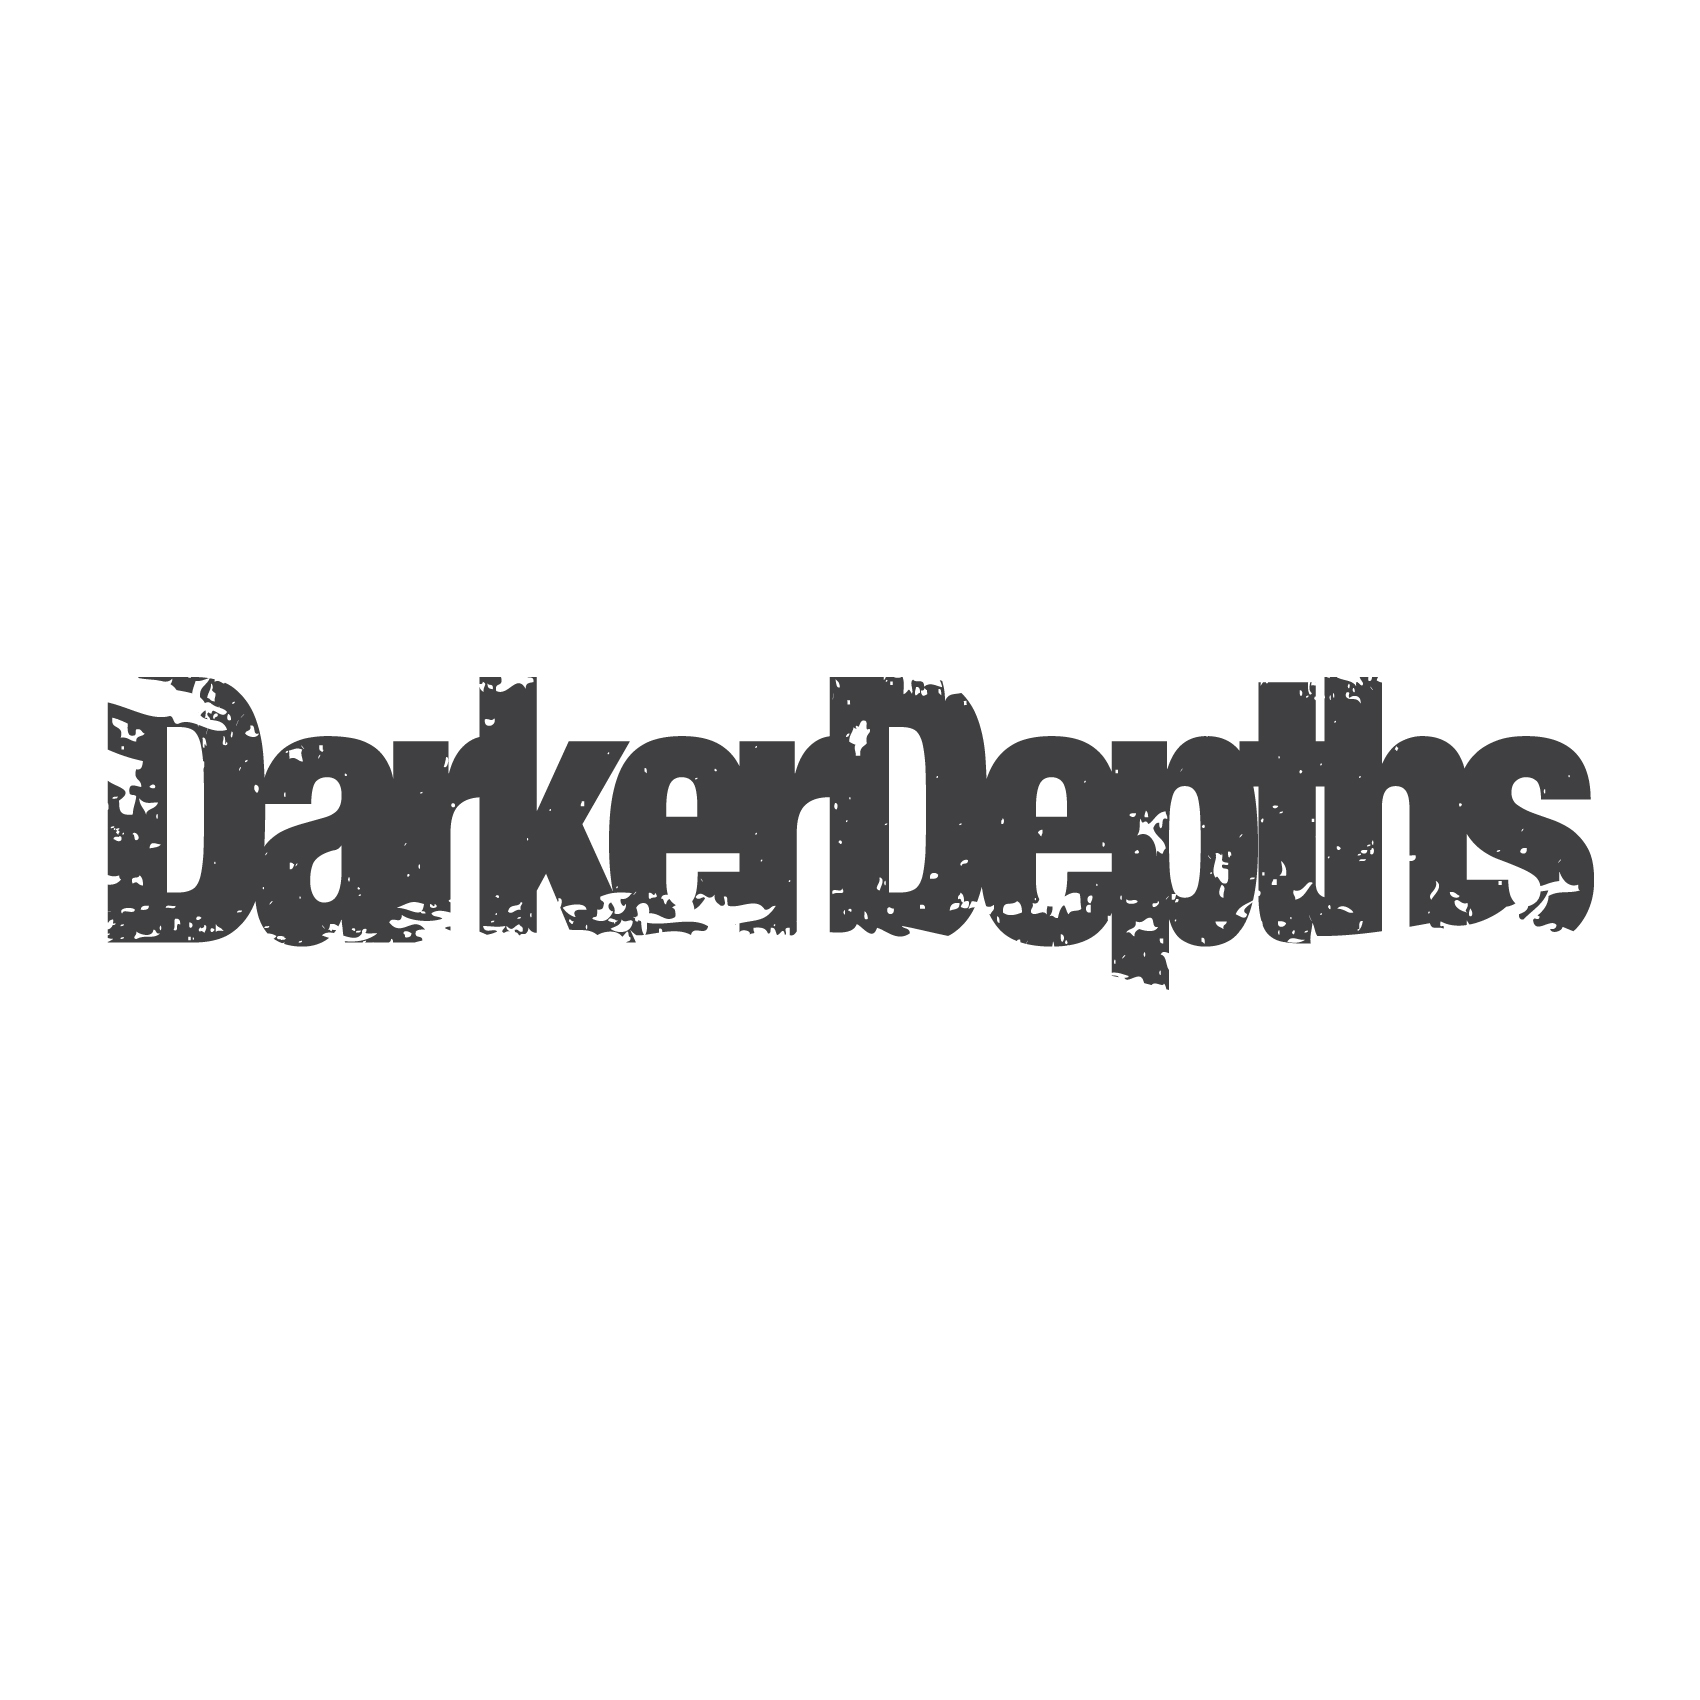 Darker Depths